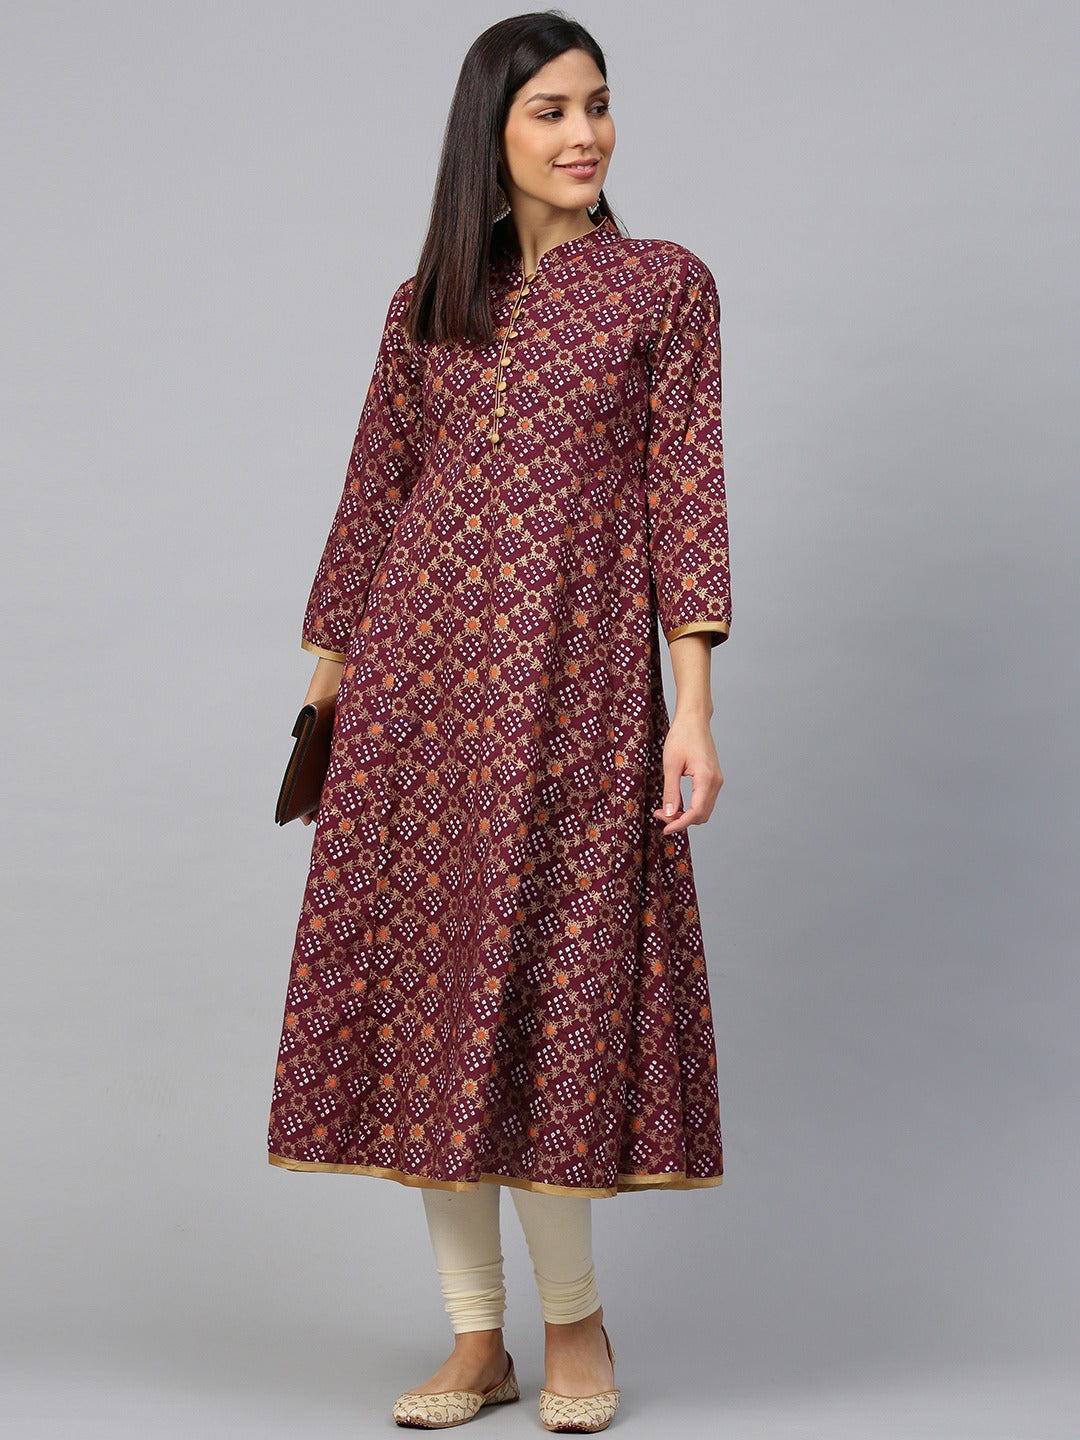 Women's Magenta & Golden Bandhani Printed Anarkali Kurta - Bhama Couture